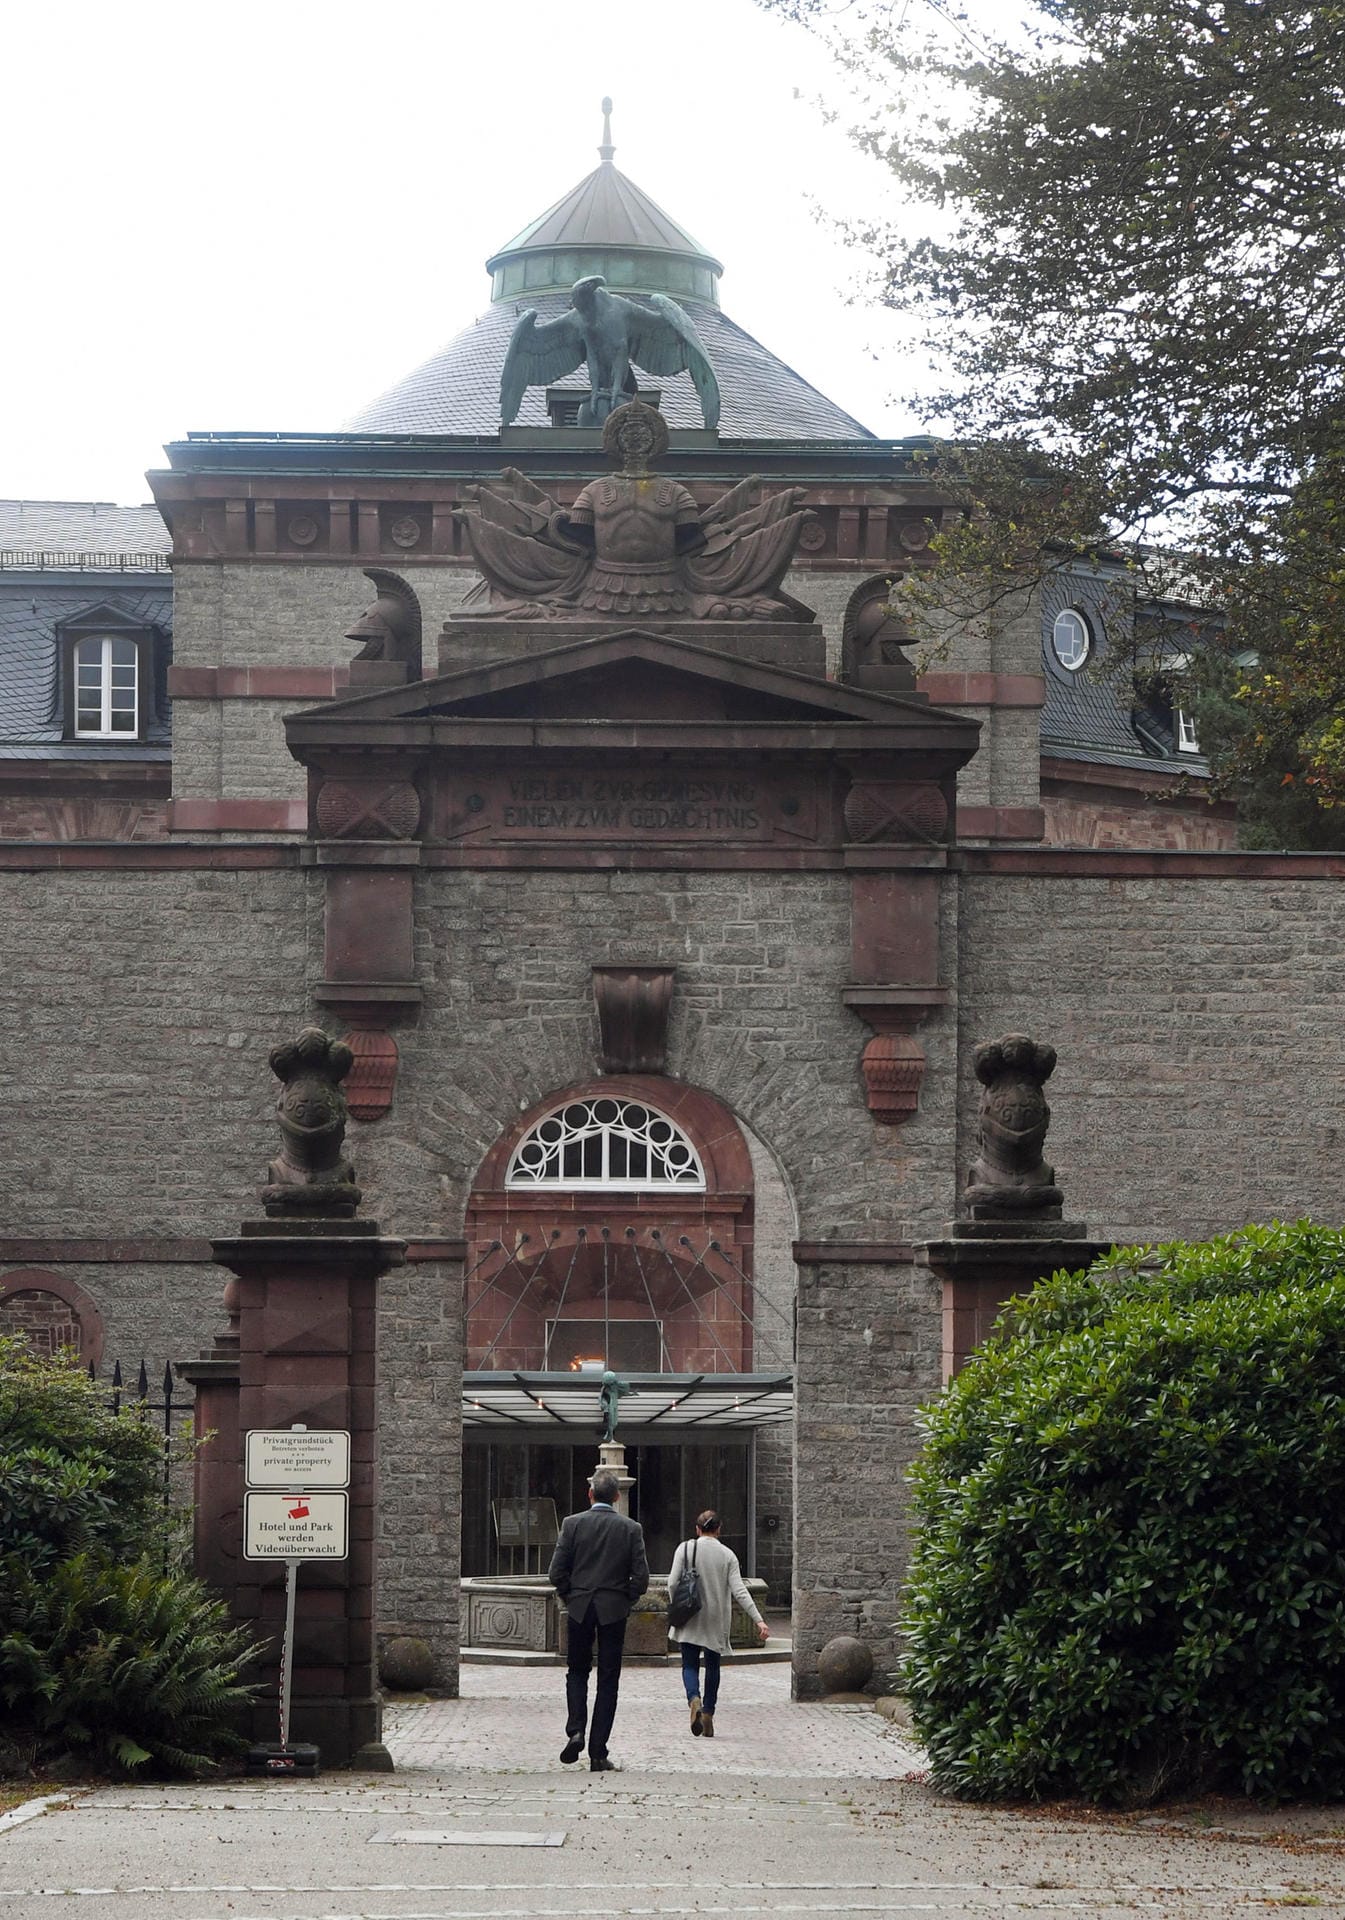 Durch das Eingangsportal des Hotels Bühlerhöhe bei Bühl gingen seit Jahren die Reichen und Mächtigen.